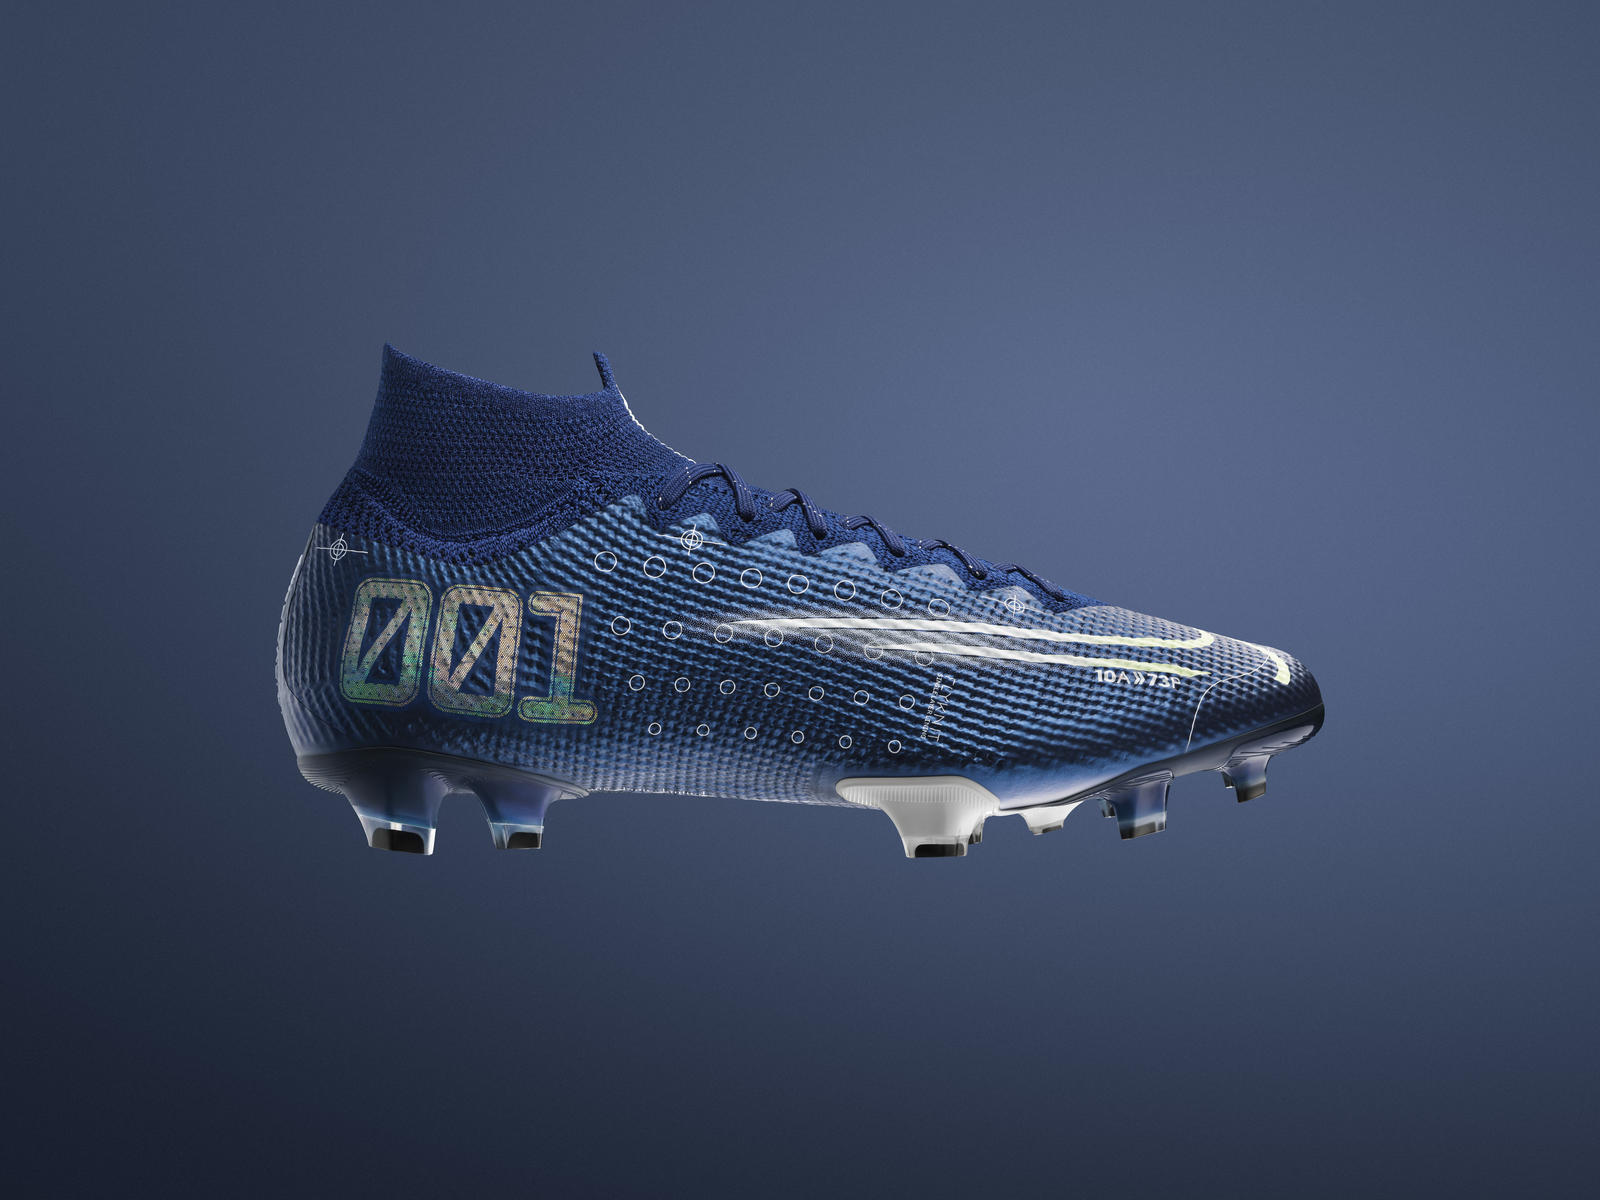 Nike dévoile les nouveaux crampons Mercurial "Dream Speed" de Cristiano